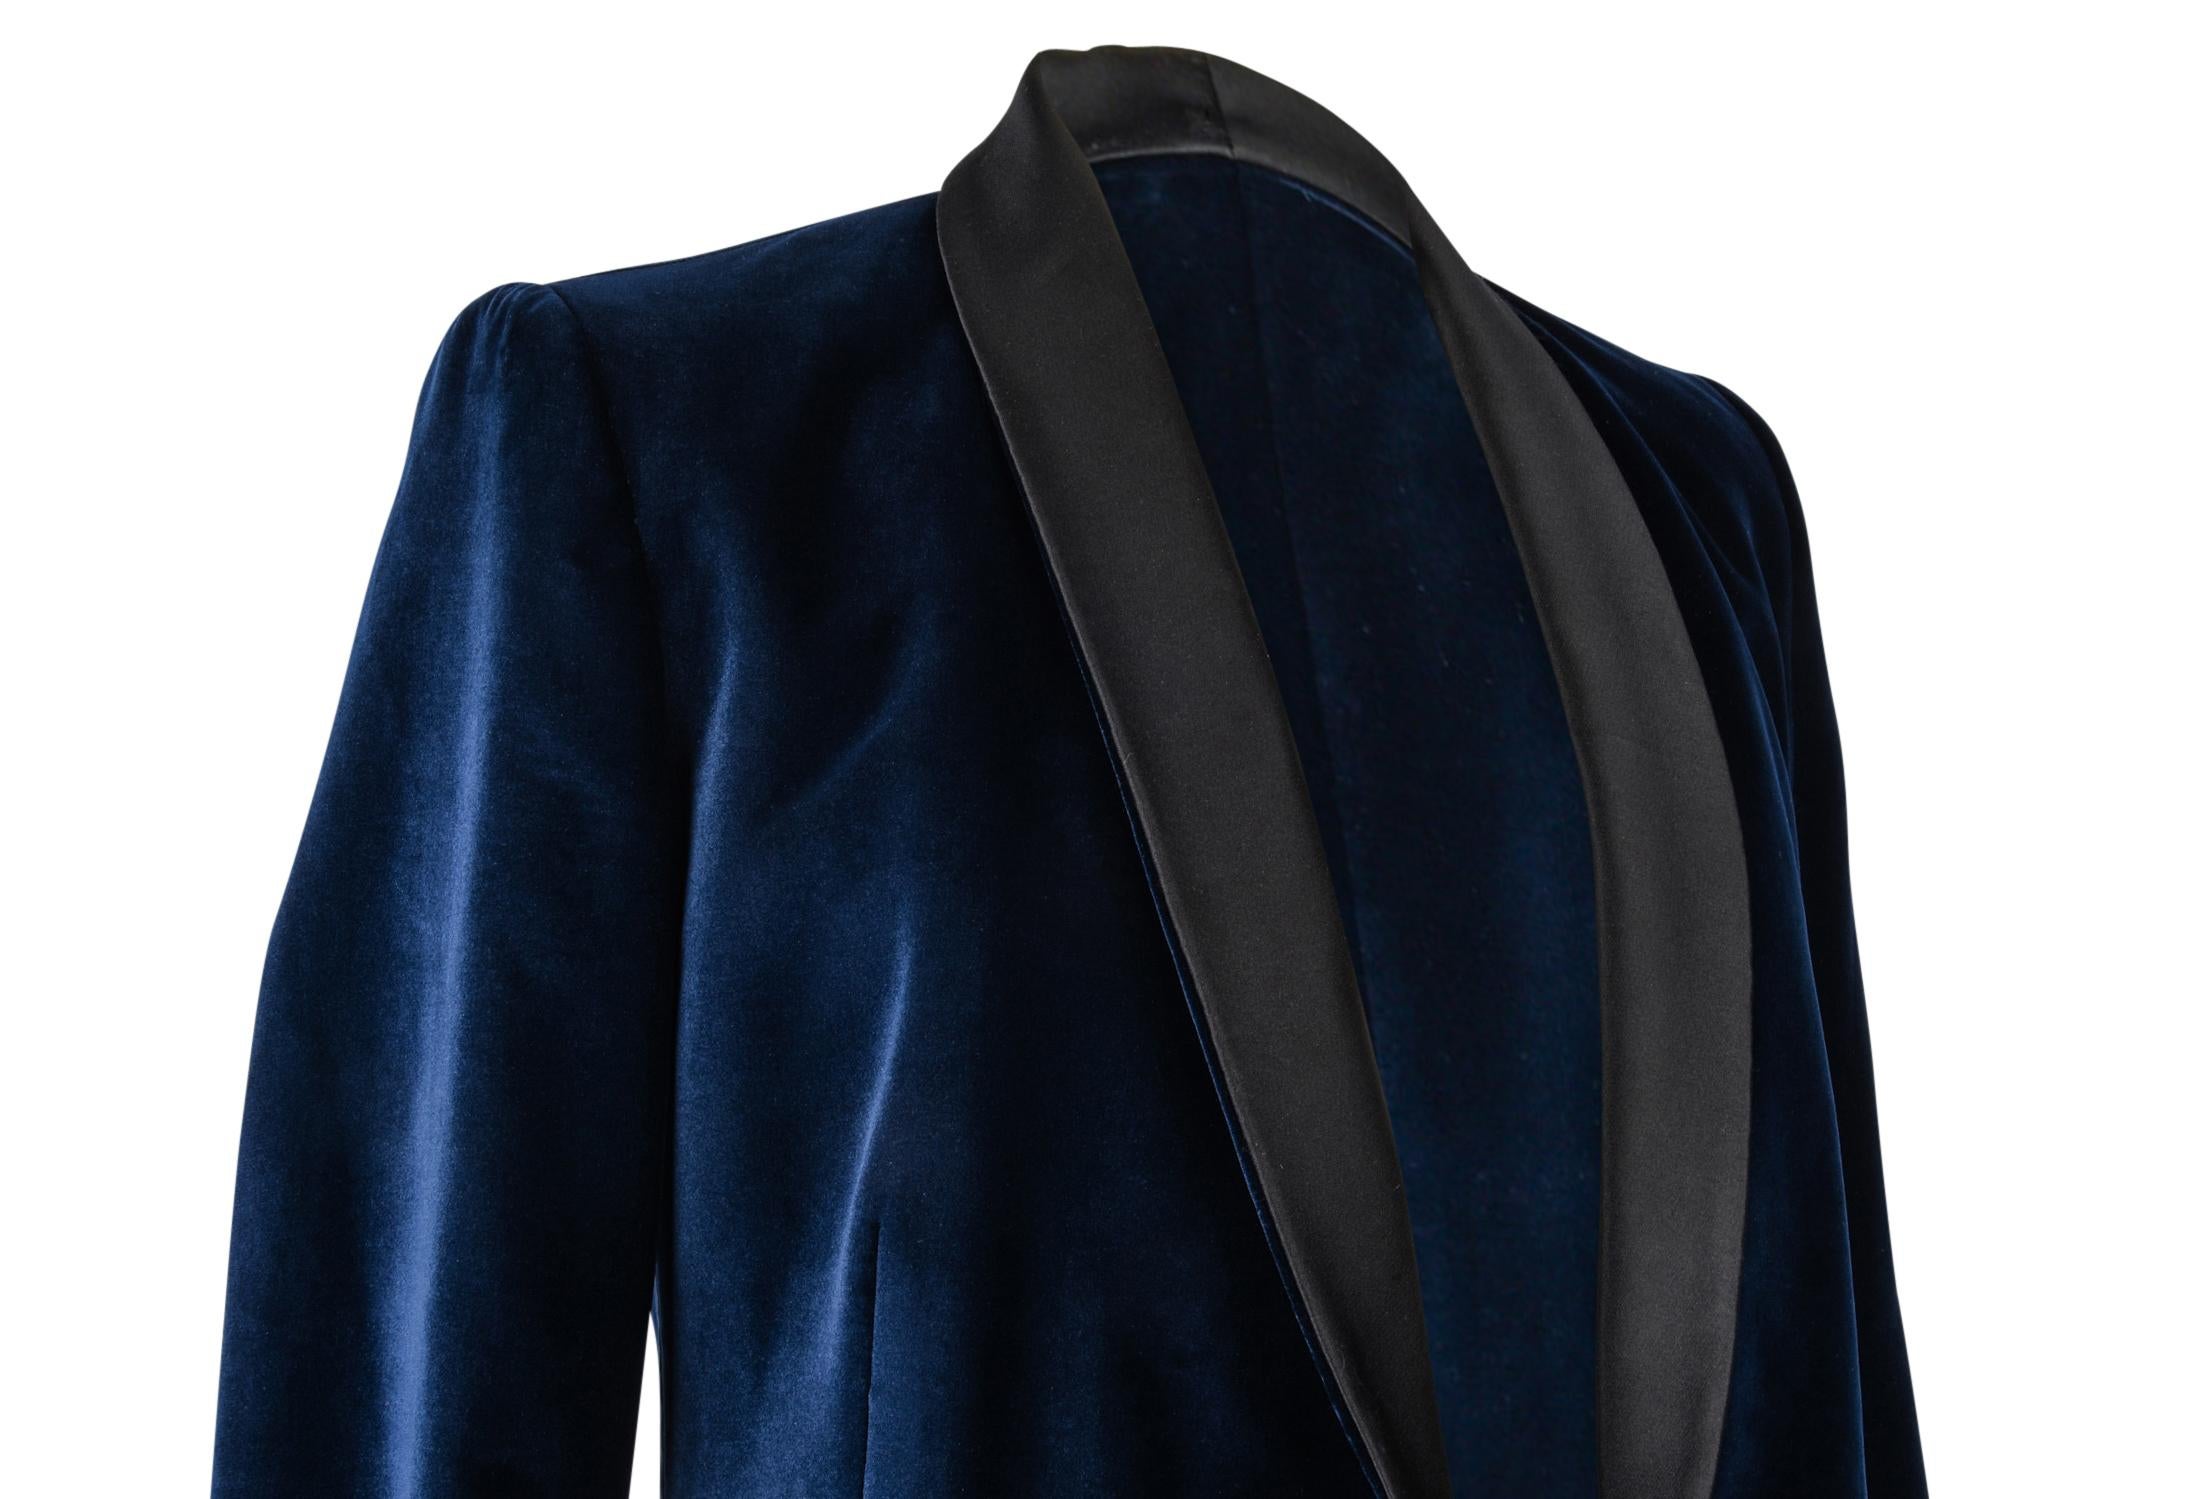 Stella McCartney Jacket Tuxedo Style Navy Velvet Black Trim 38 / 6 4